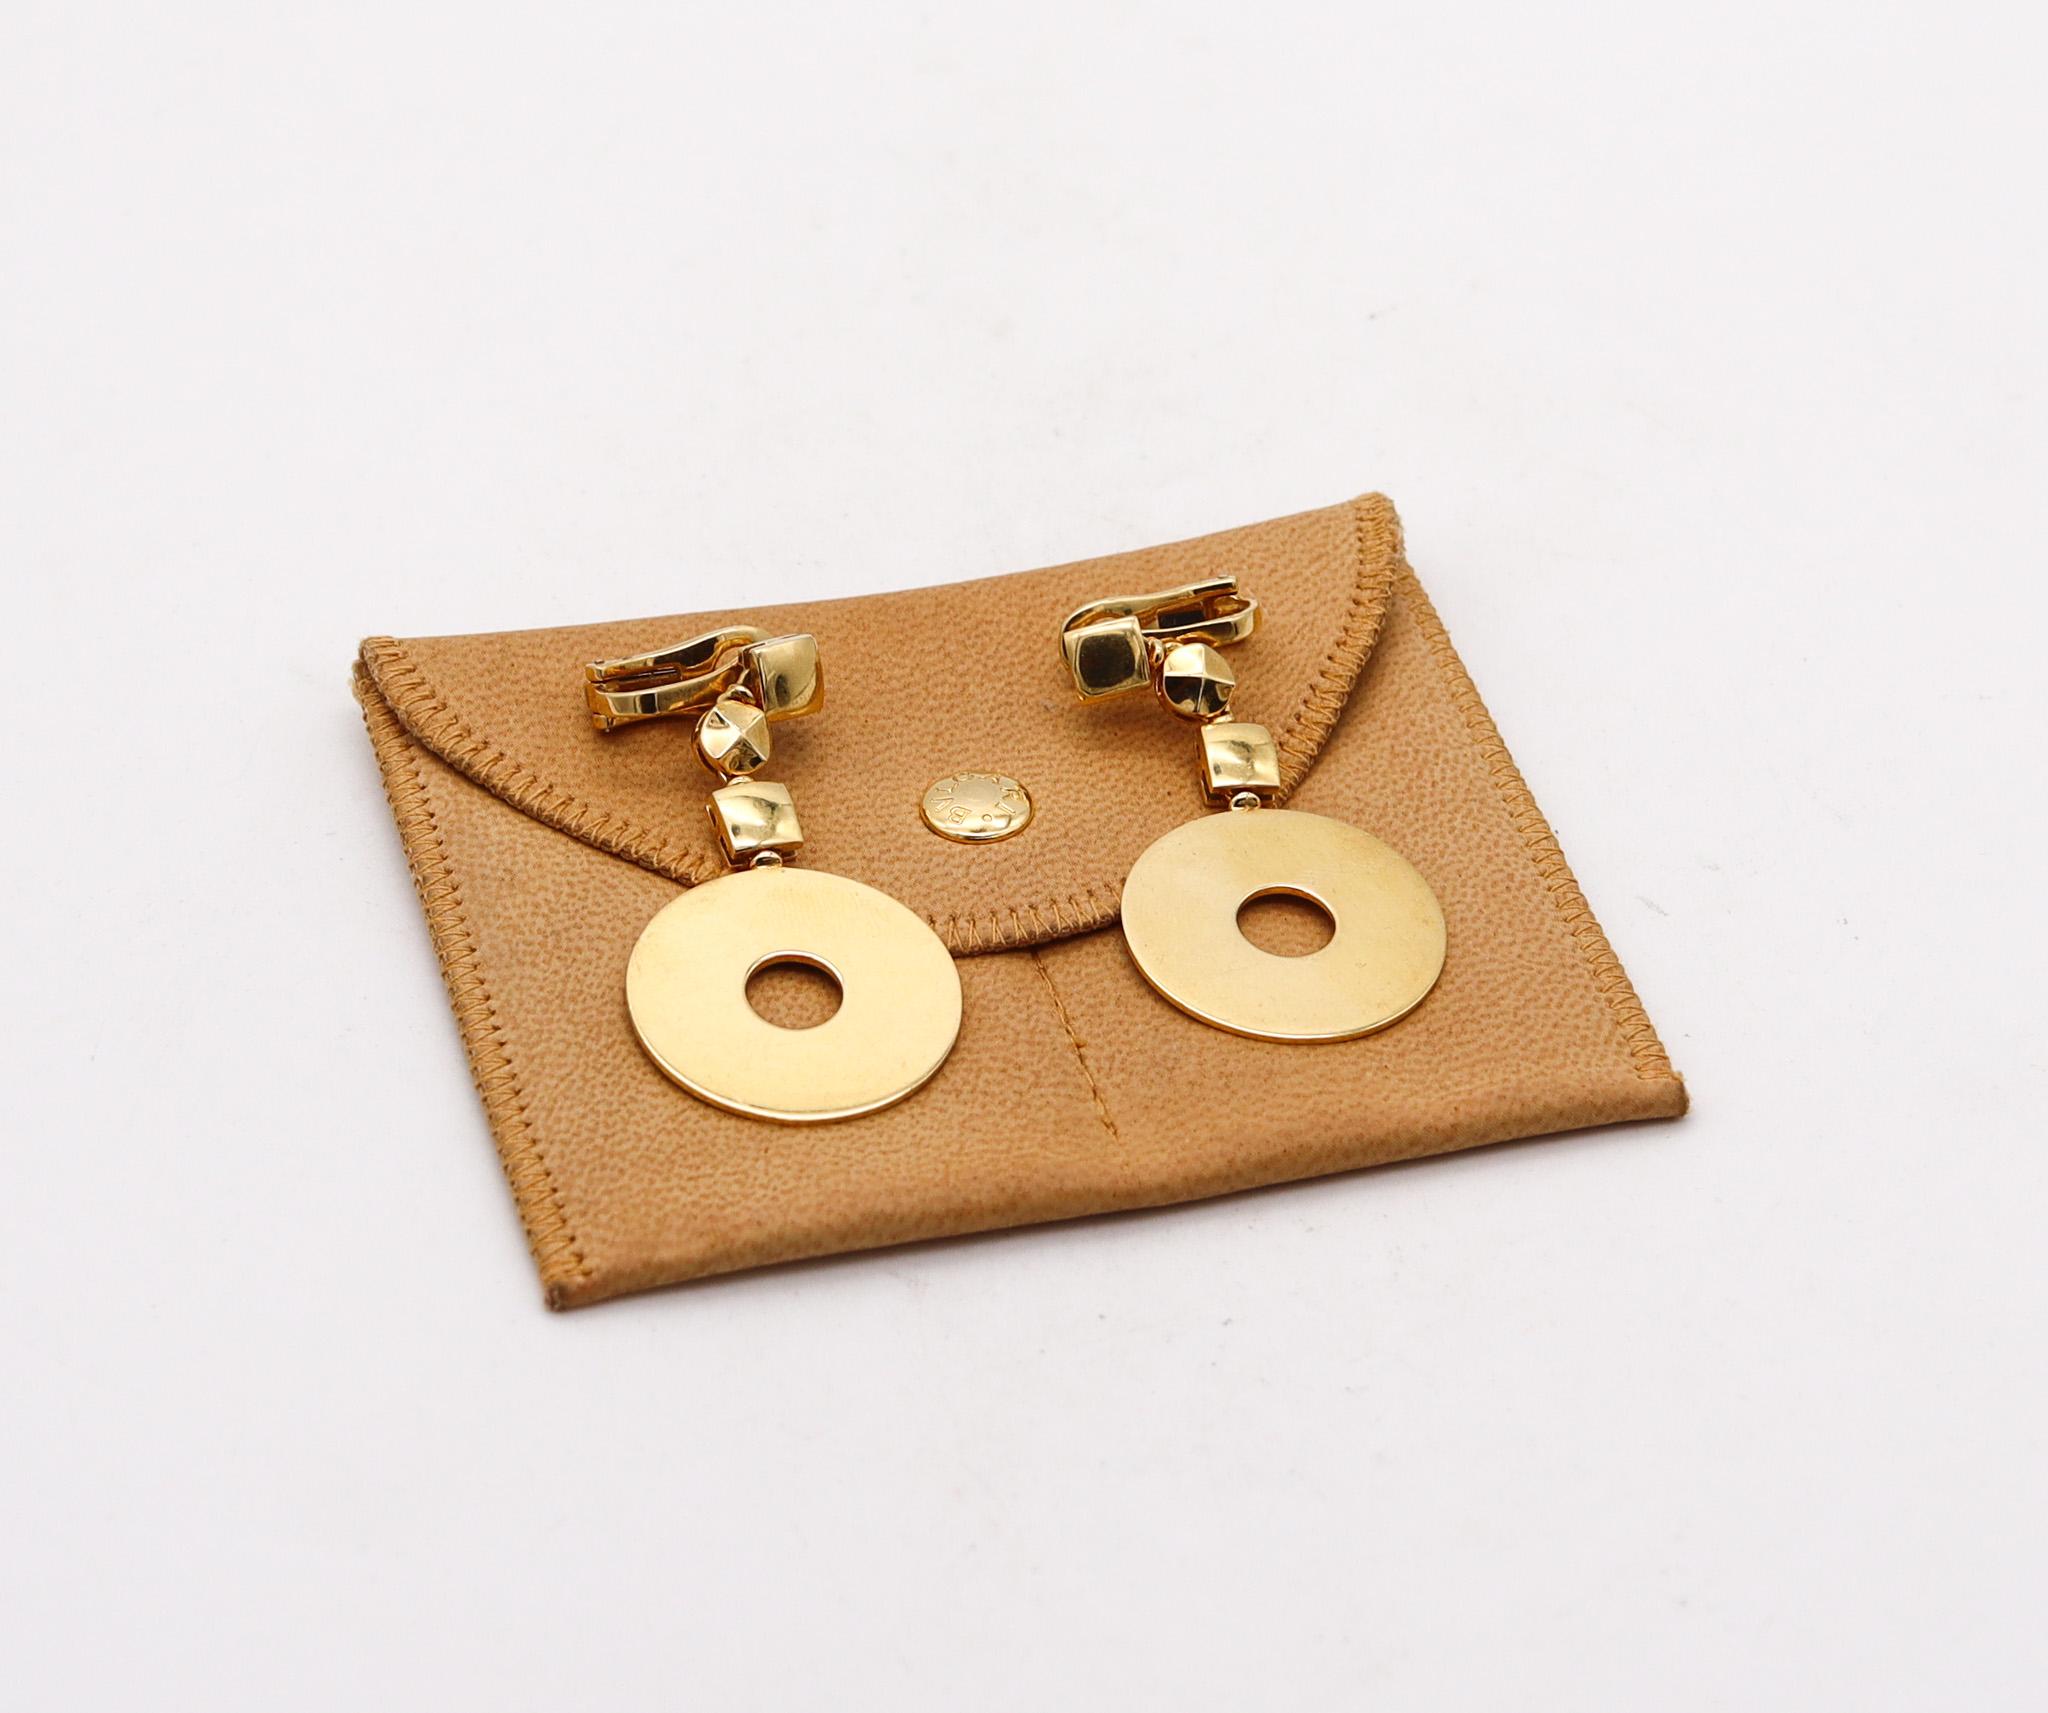 Boucles d'oreilles pendantes conçues par Bvlgari.

Boucles d'oreilles géométriques rares, créées à Romae Jewelry en Italie par la maison de joaillerie Bvlgari. Ces boucles d'oreilles pendantes contemporaines ont été réalisées en or jaune massif de